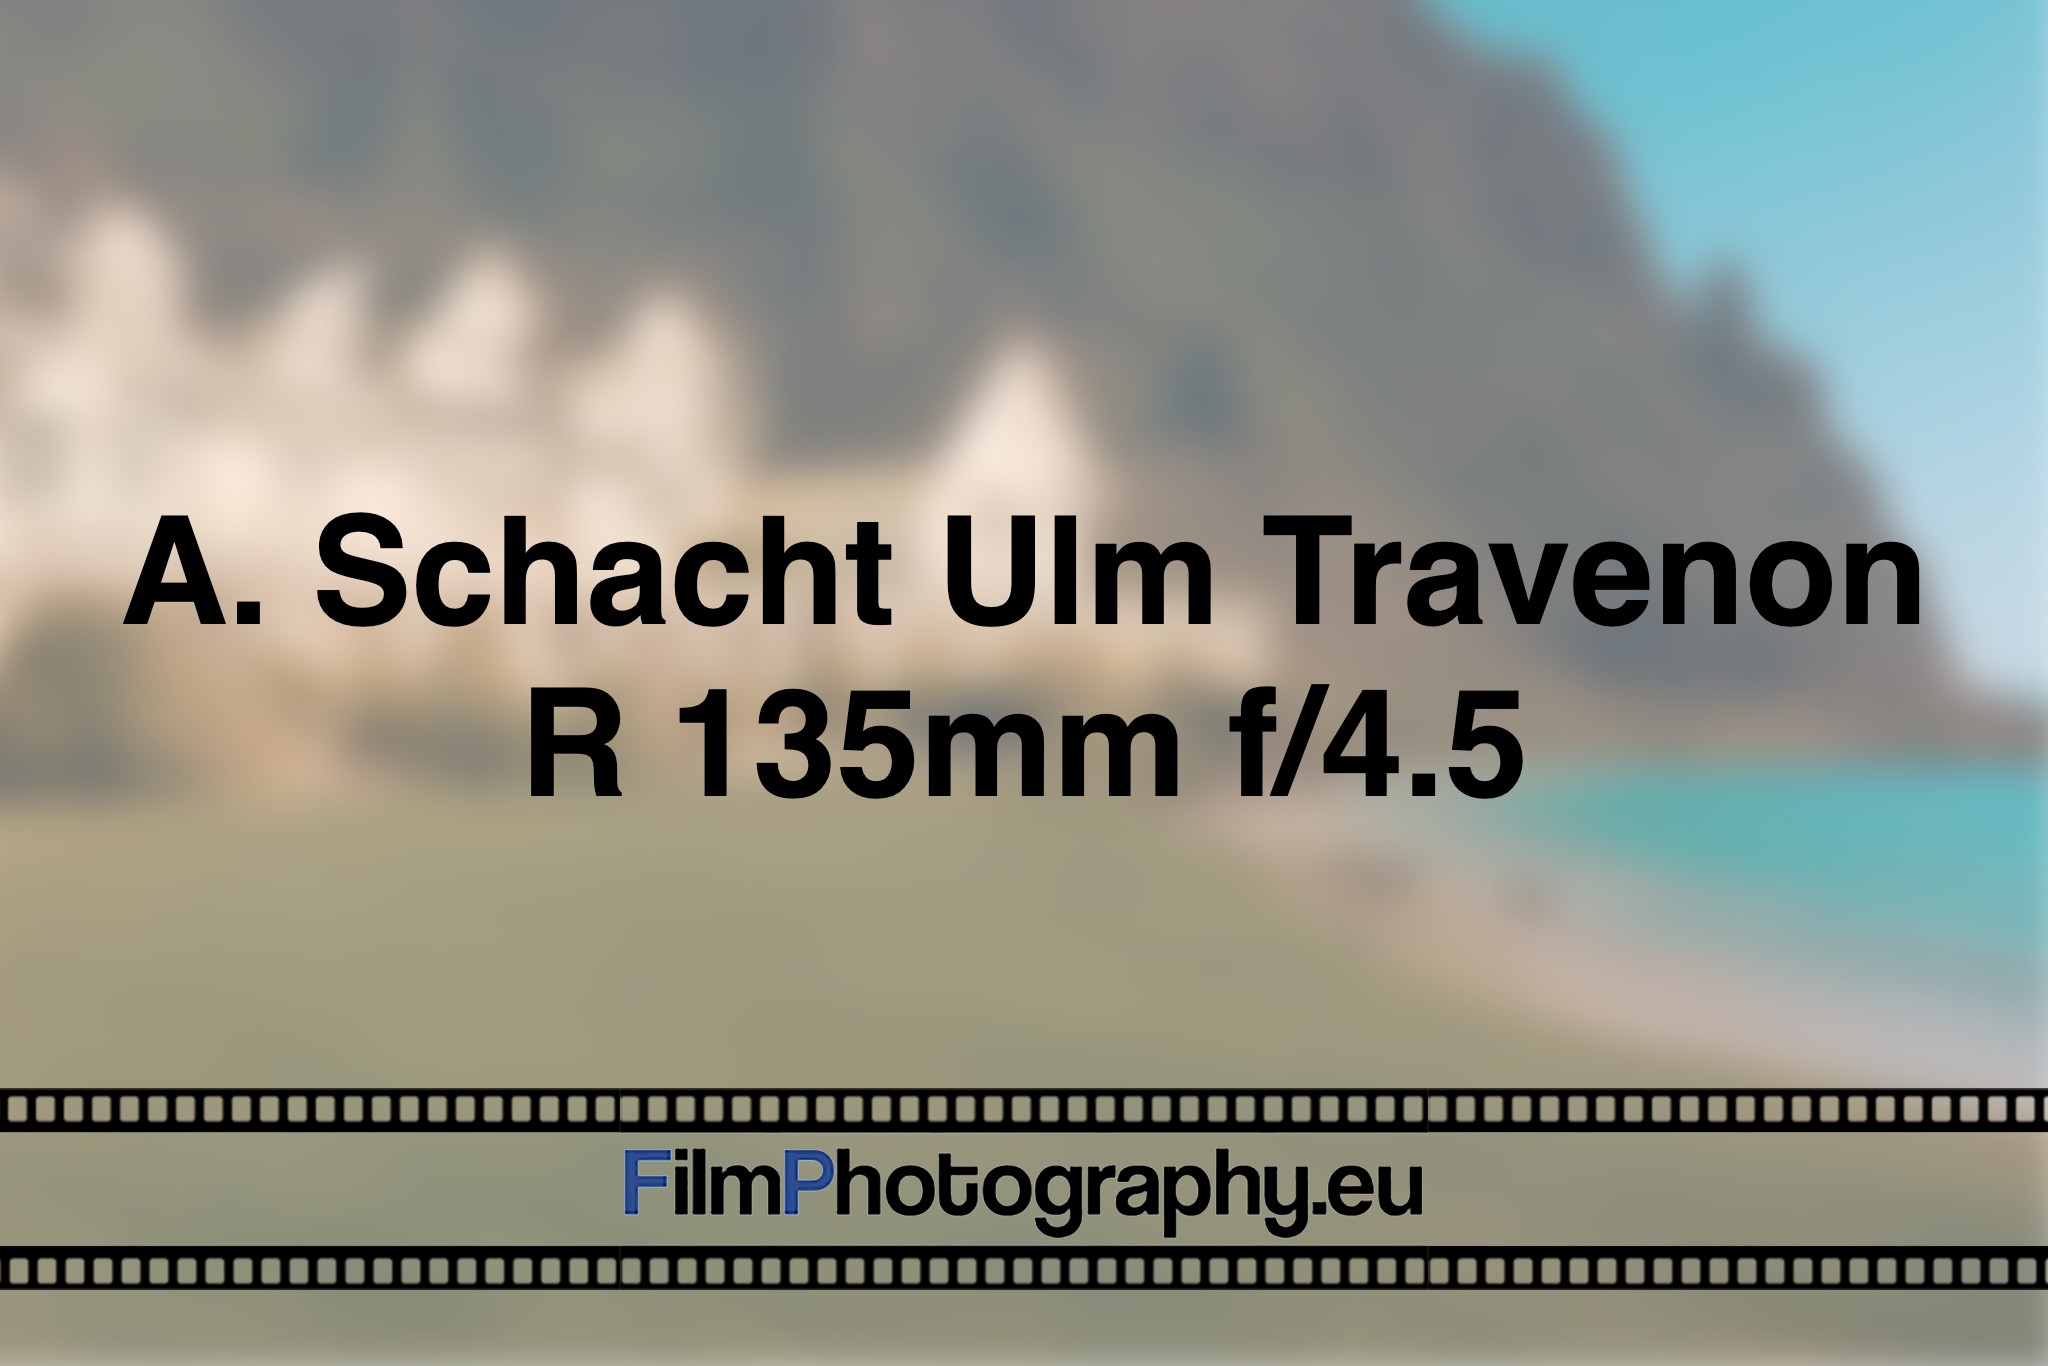 a-schacht-ulm-travenon-r-135mm-f-4-5-photo-bnv